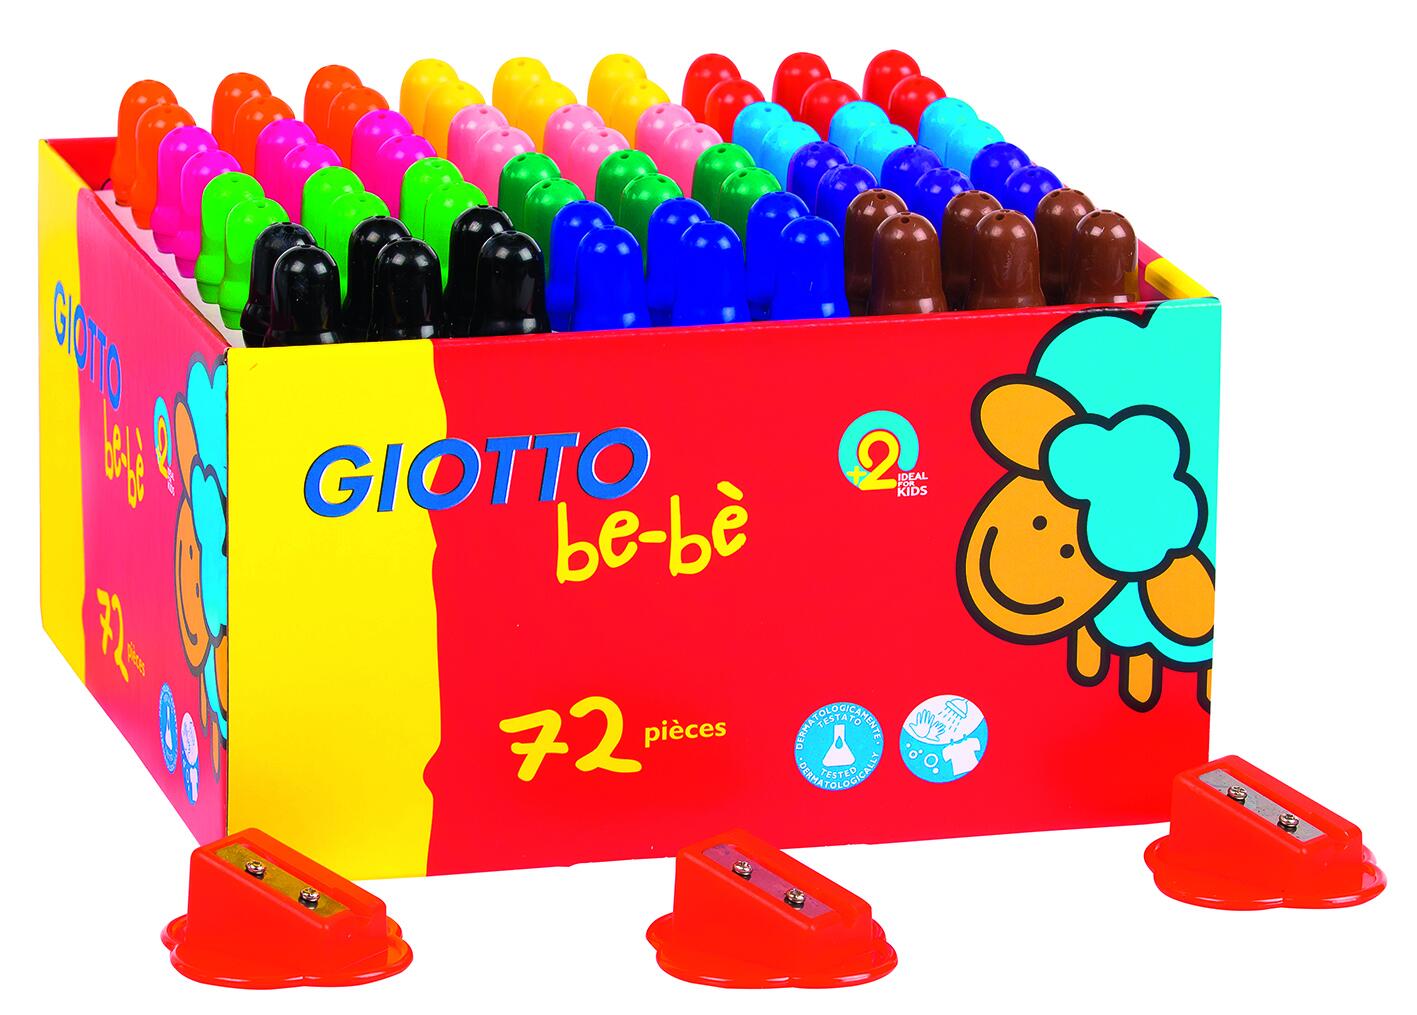 Maxi schoolpack de 72 crayons de couleur - Giotto Be-bé